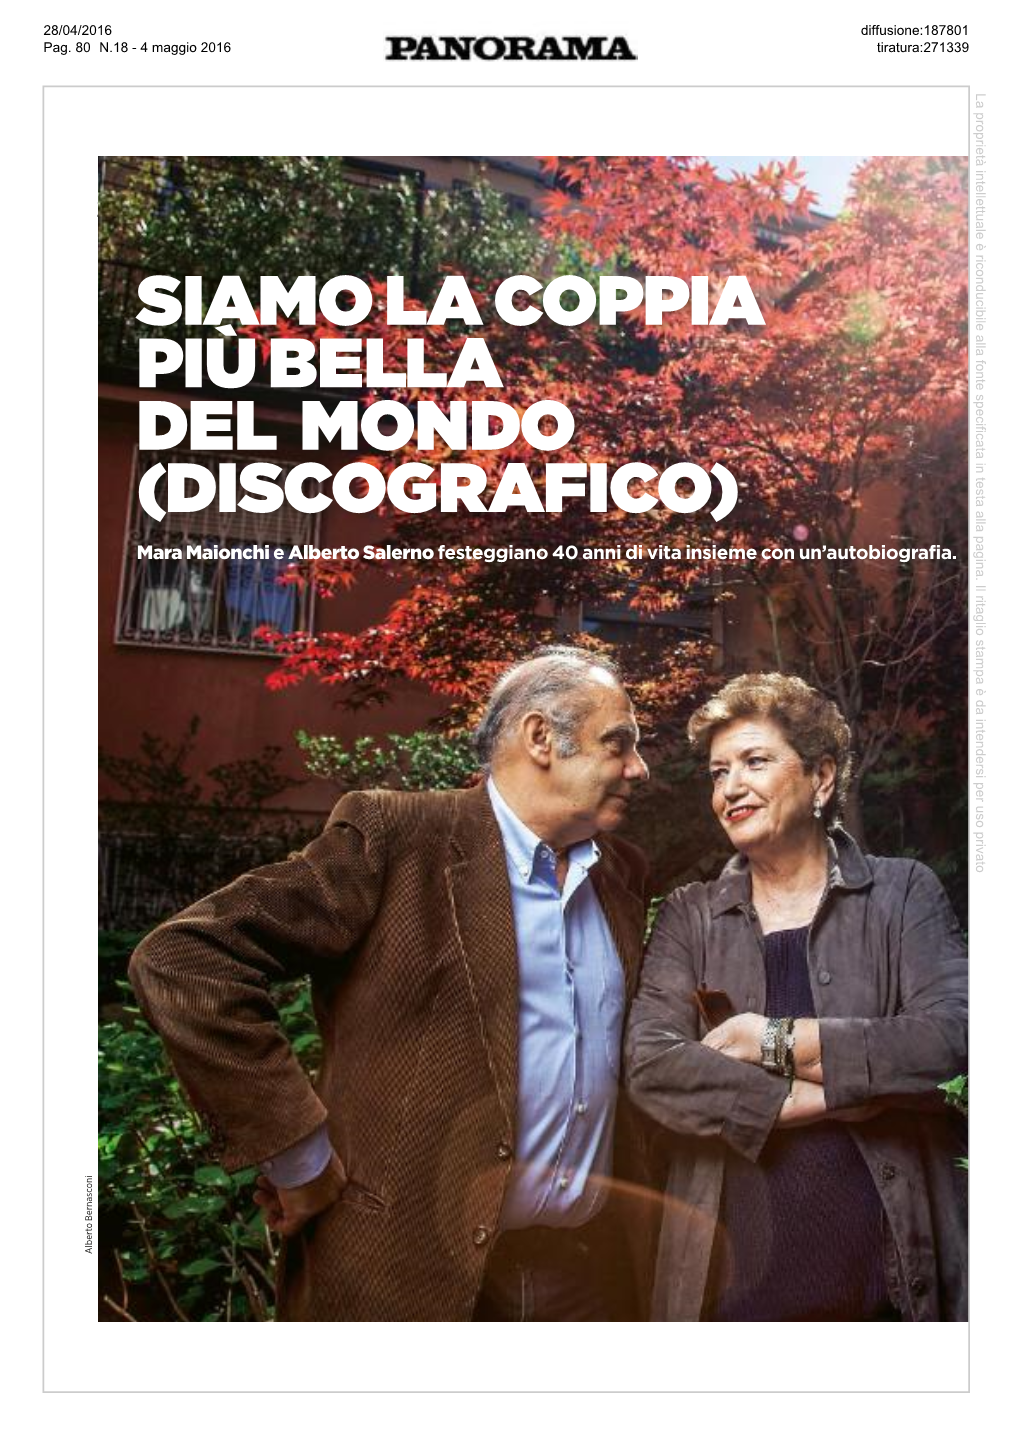 DISCOGRAFICO) Mara Maionchi E Alberto Salerno Festeggiano 40 Anni Di Vita Insieme Con Un’Autobiografia